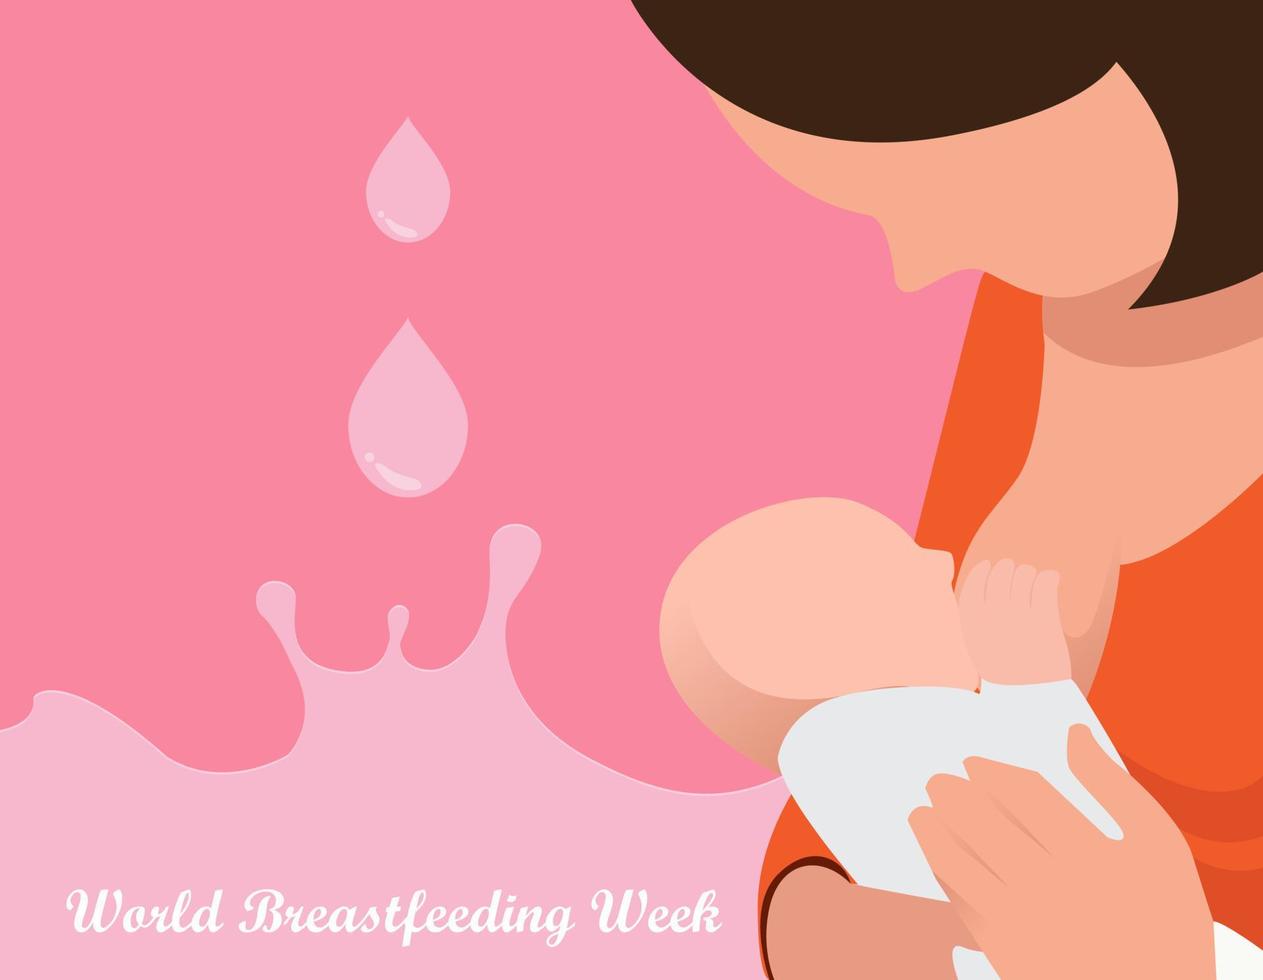 Semana Mundial do Aleitamento Materno, de 1 a 7 de agosto. banner, clipart do dia das mães. criança bebe leite do peito feminino. vetor